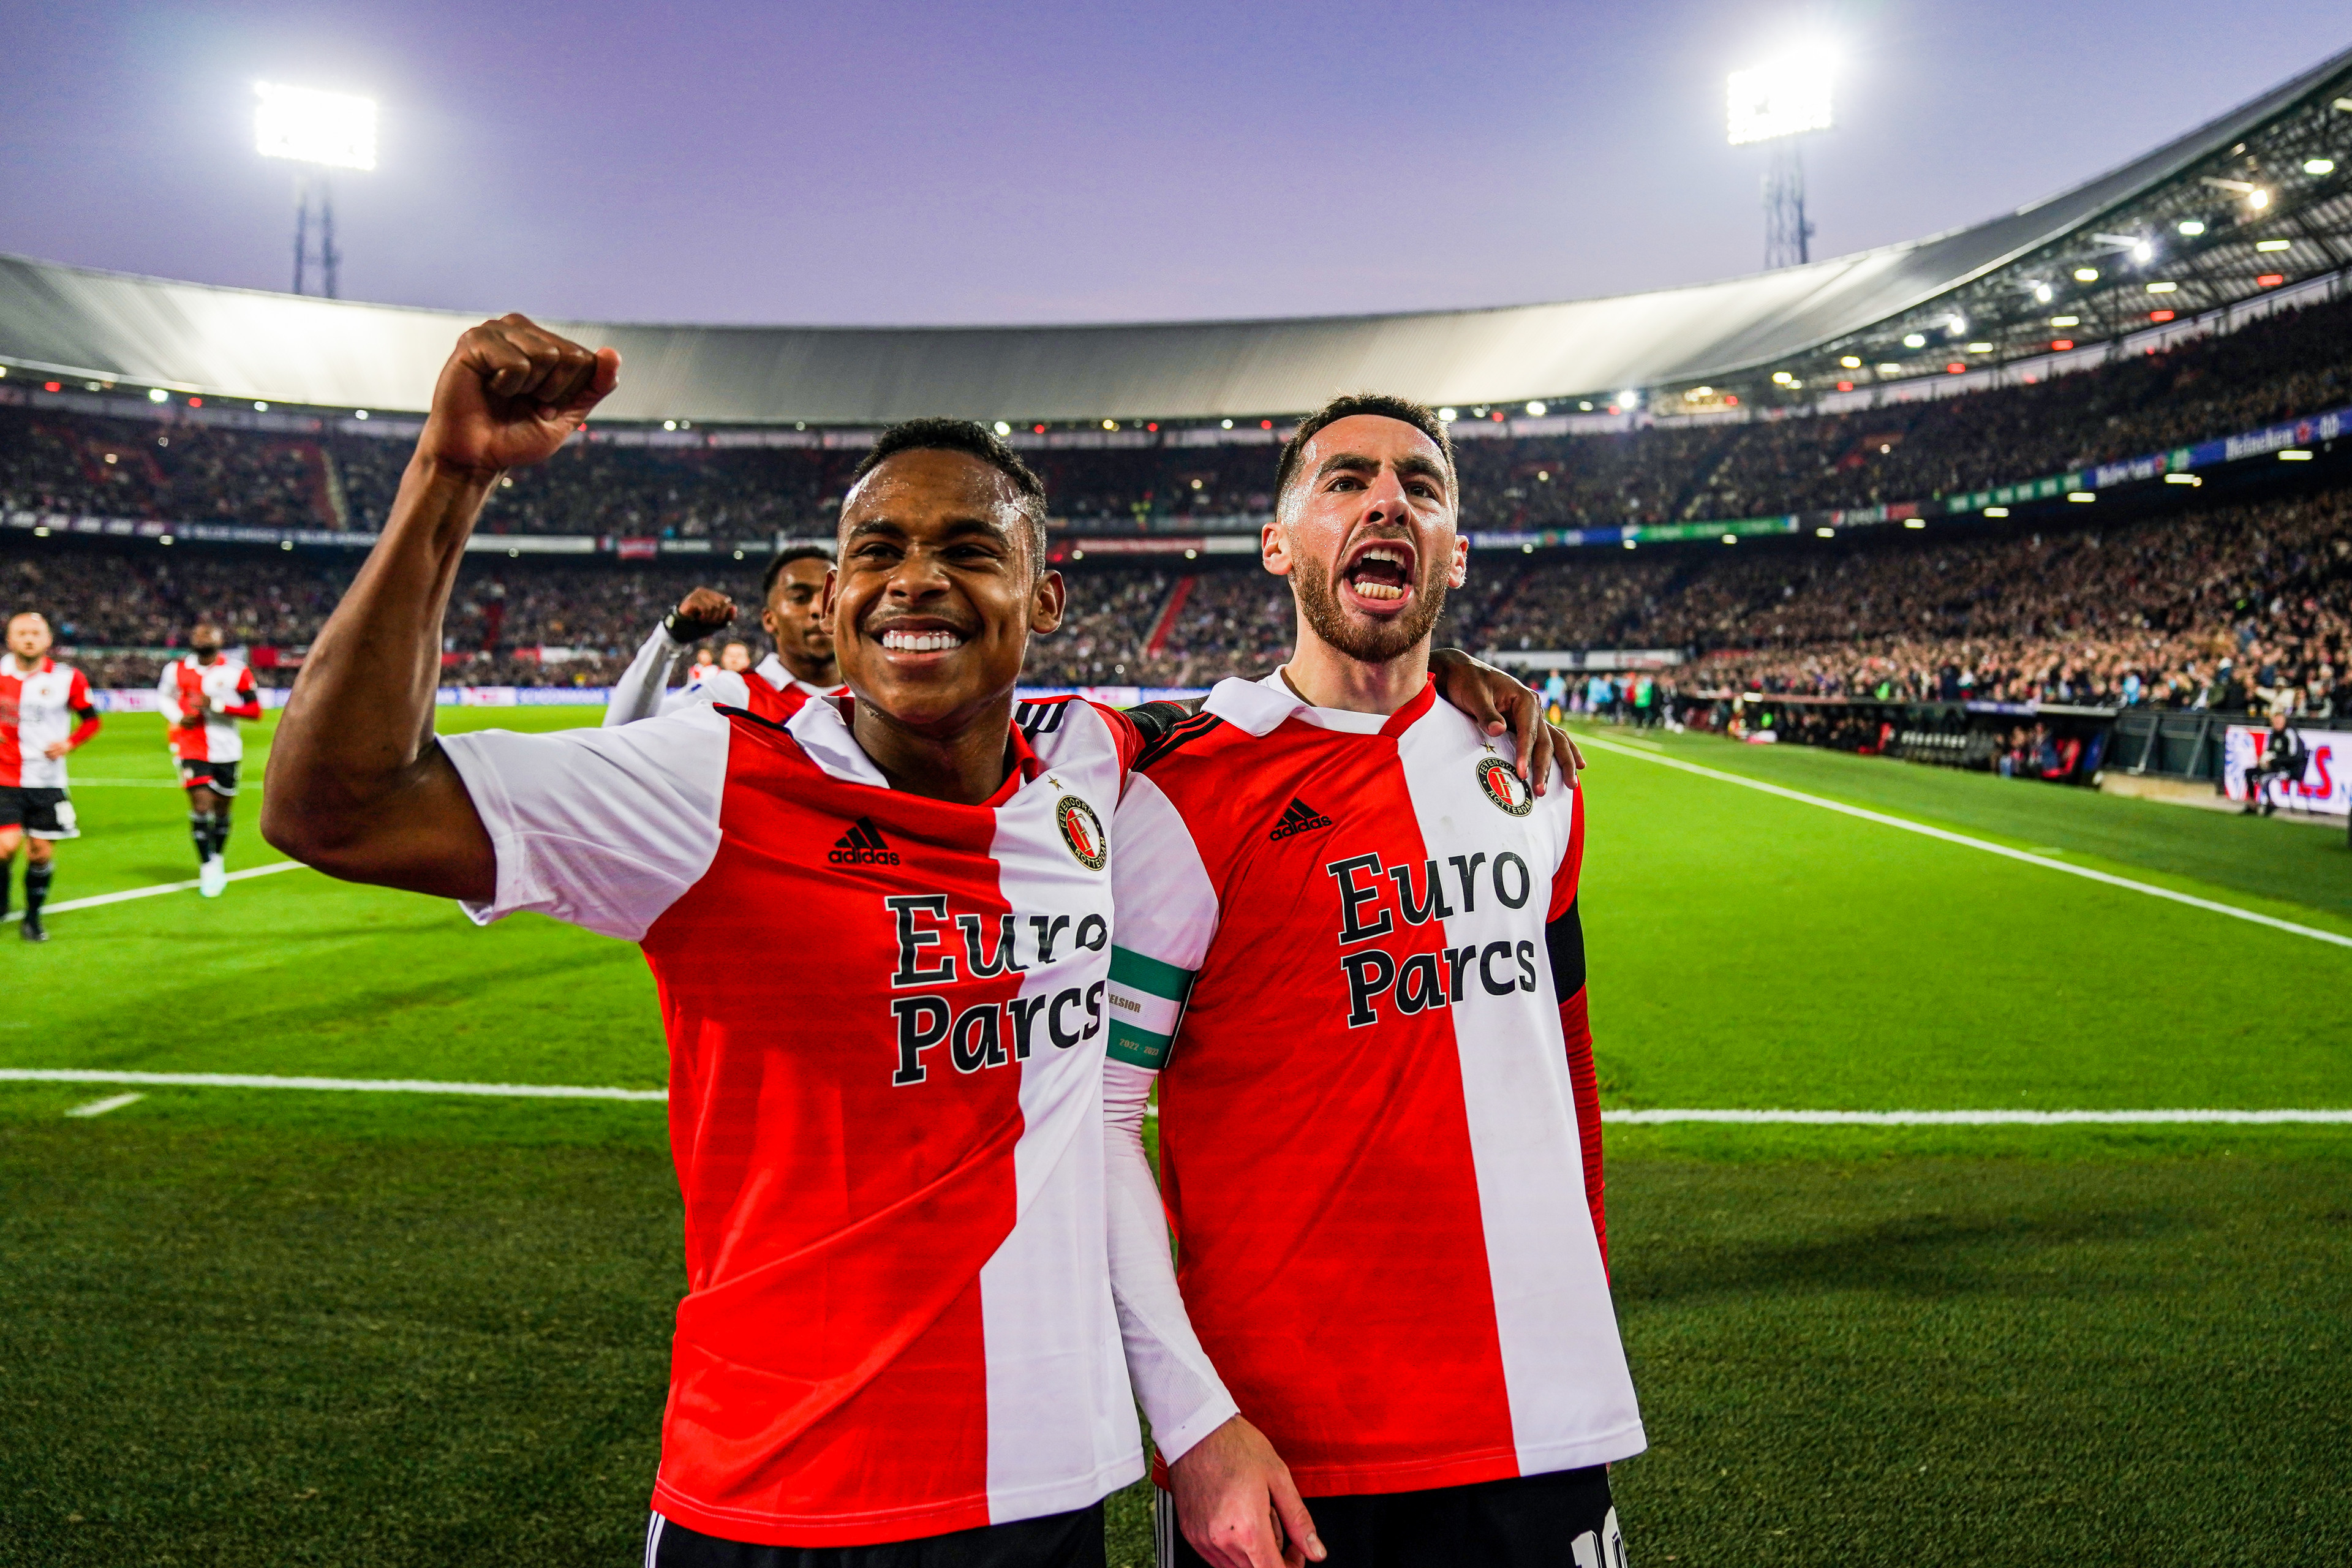 Paixão: "Ik wil een vaste waarde gaan worden bij Feyenoord"